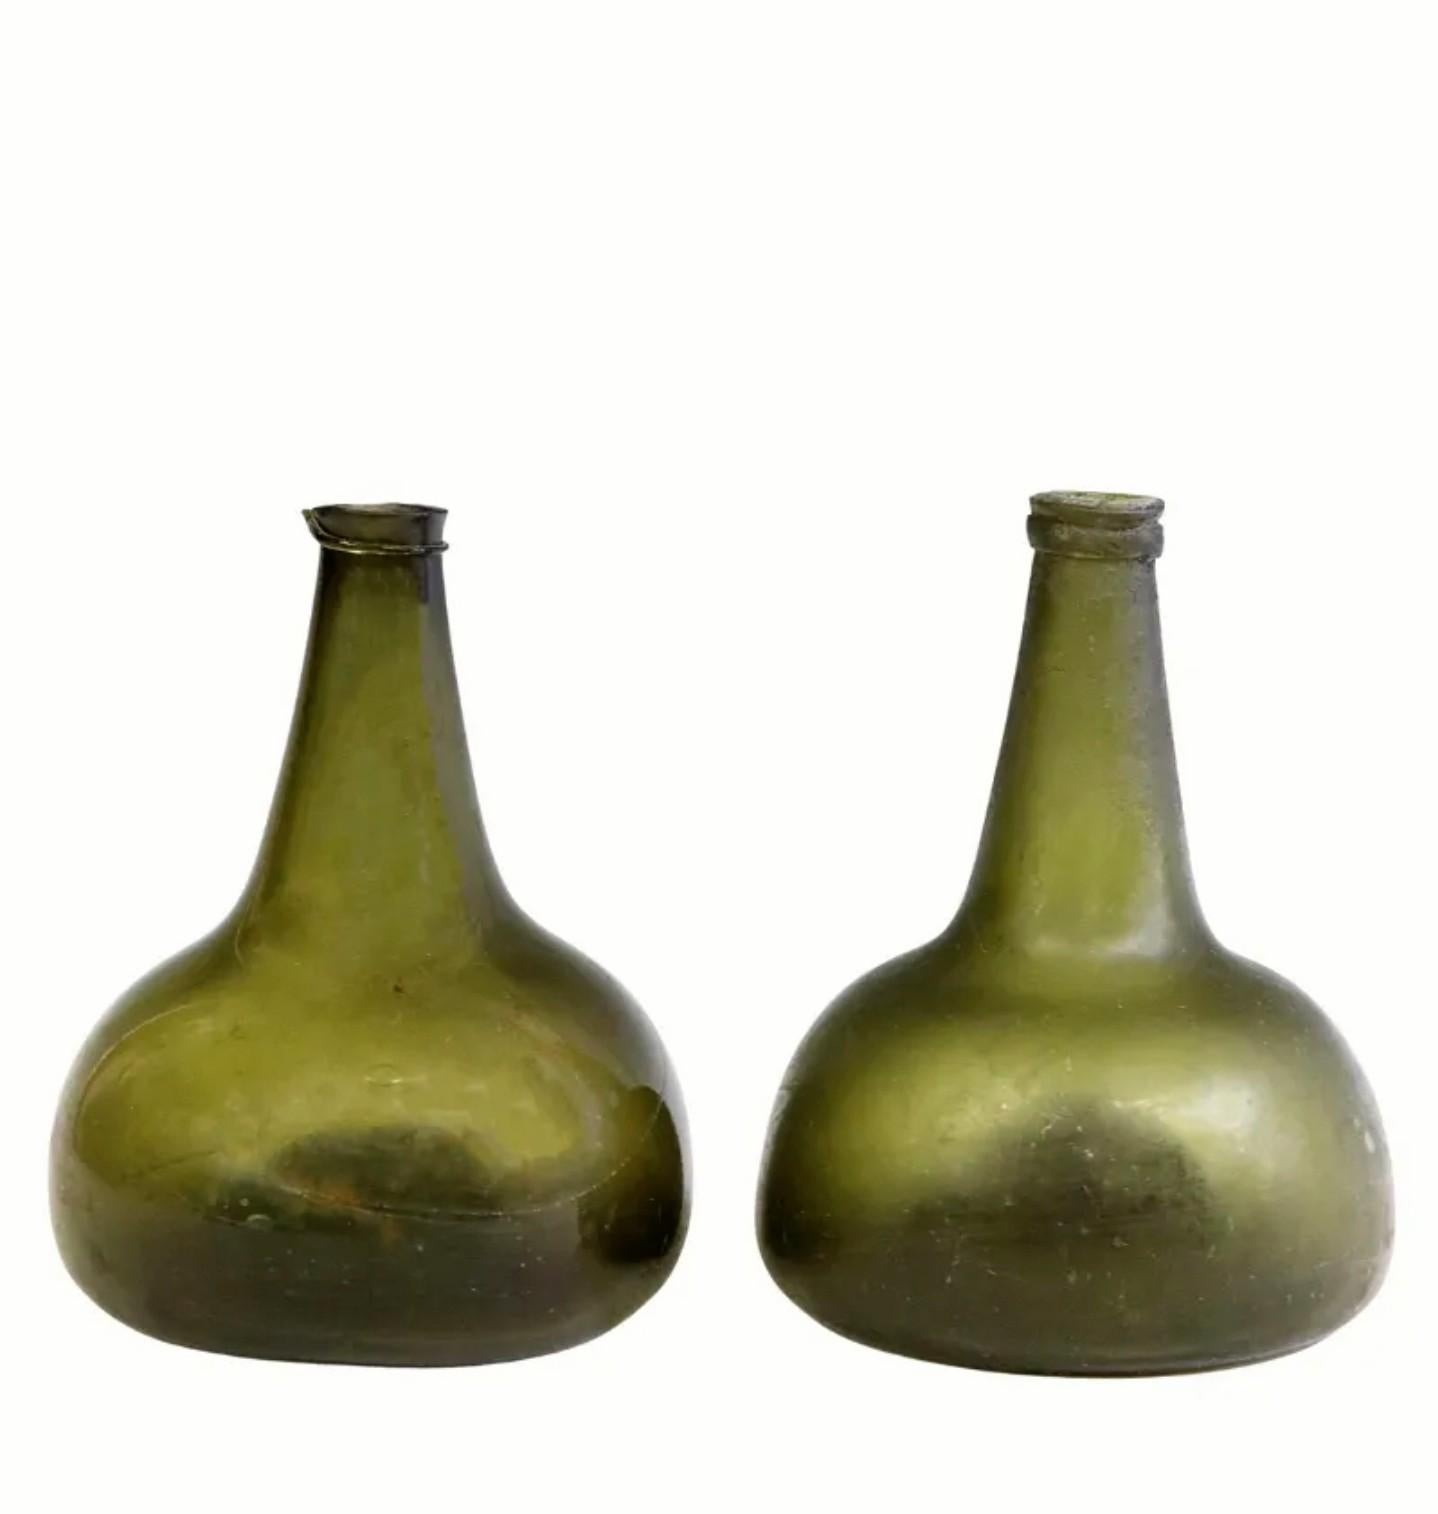 Paire de rares bouteilles à vin en verre à olive de forme oignon Kattekop d'Europe du Nord, datant de près de 250 ans, vers 1775.

Soufflé à la main dans la seconde moitié du XVIIIe siècle, très probablement aux Pays-Bas, en verre vert olive, avec